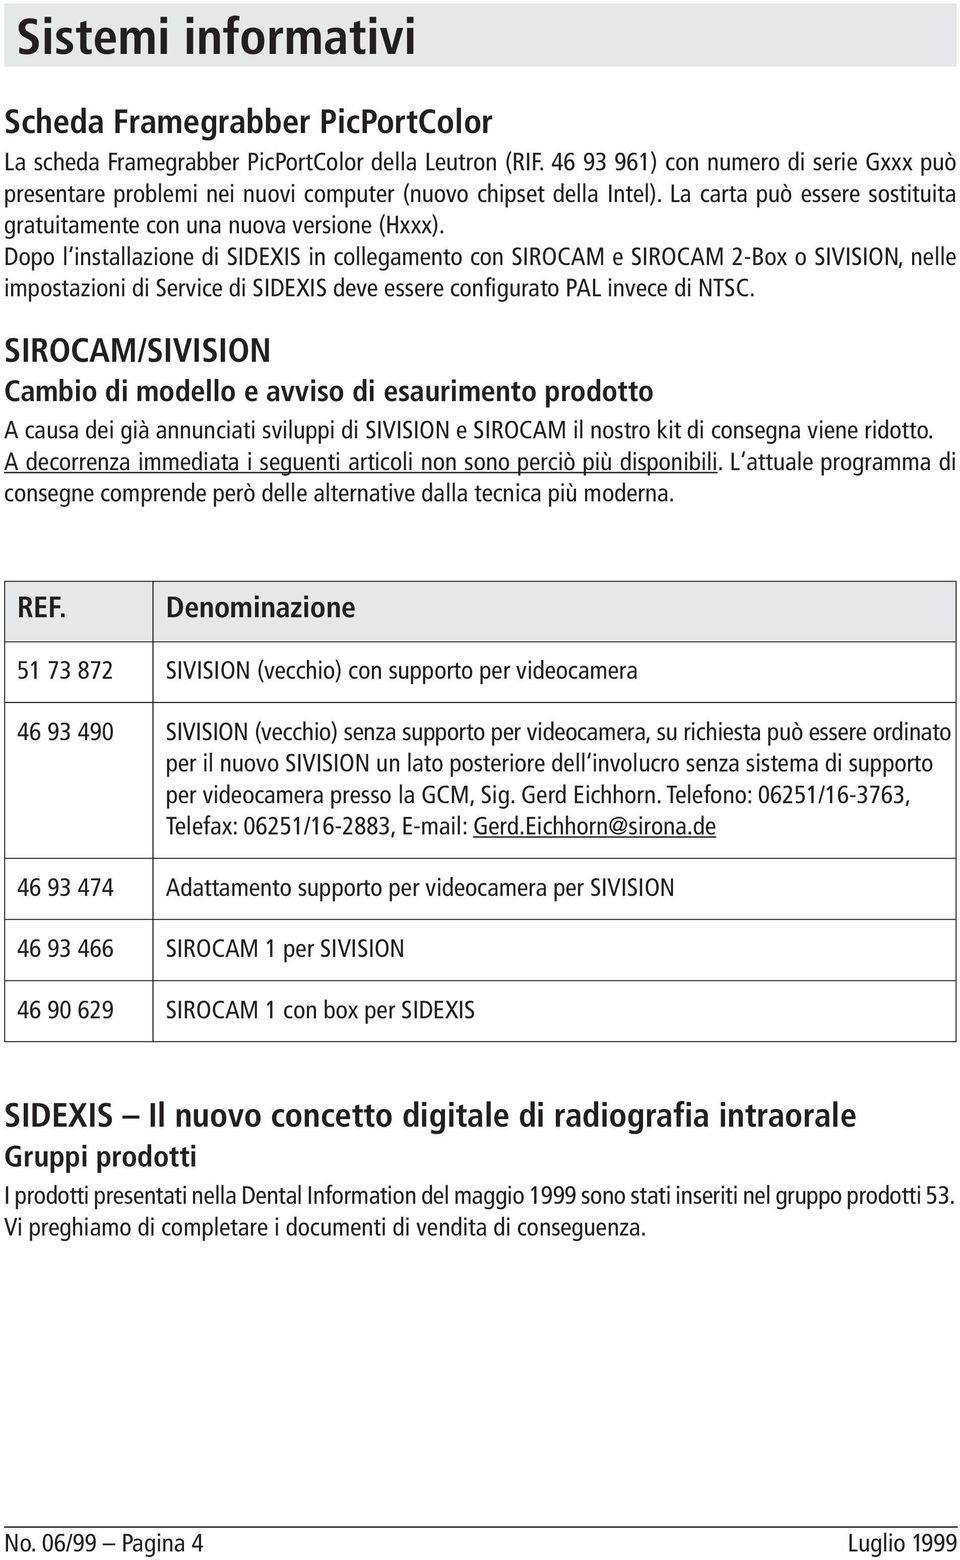 Dopo l installazione di SIDEXIS in collegamento con SIROCAM e SIROCAM 2-Box o SIVISION, nelle impostazioni di Service di SIDEXIS deve essere configurato PAL invece di NTSC.